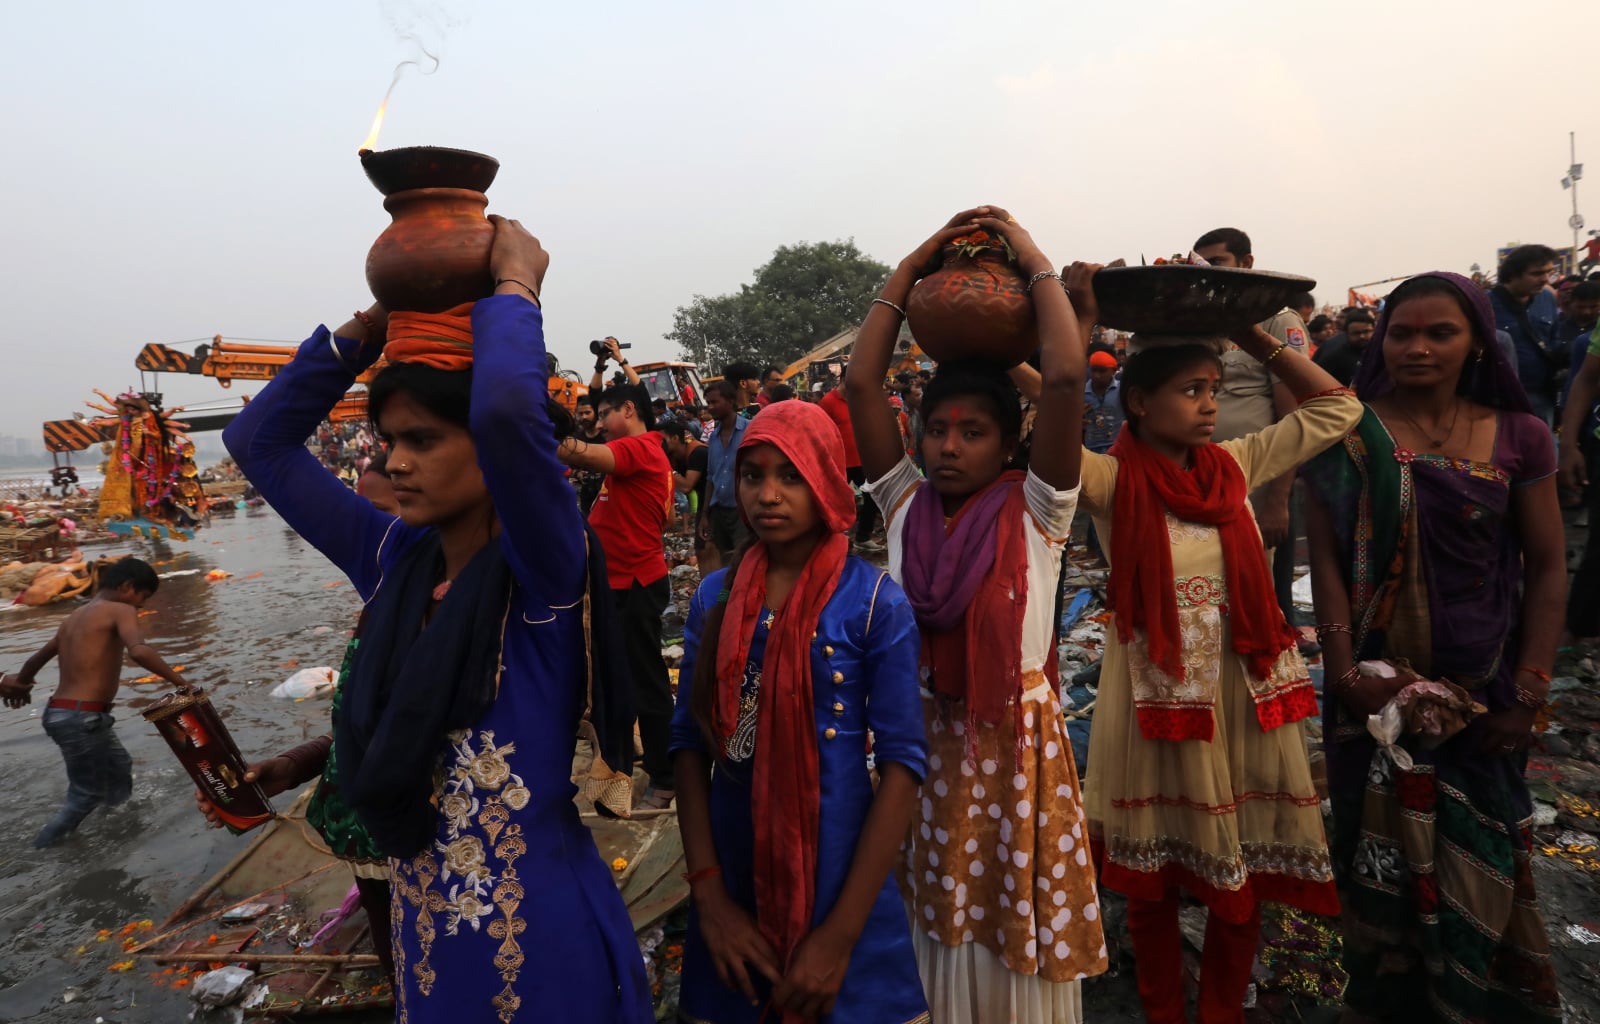 Festiwal Hindu w Indiach, EPA/RAJAT GUPTA 